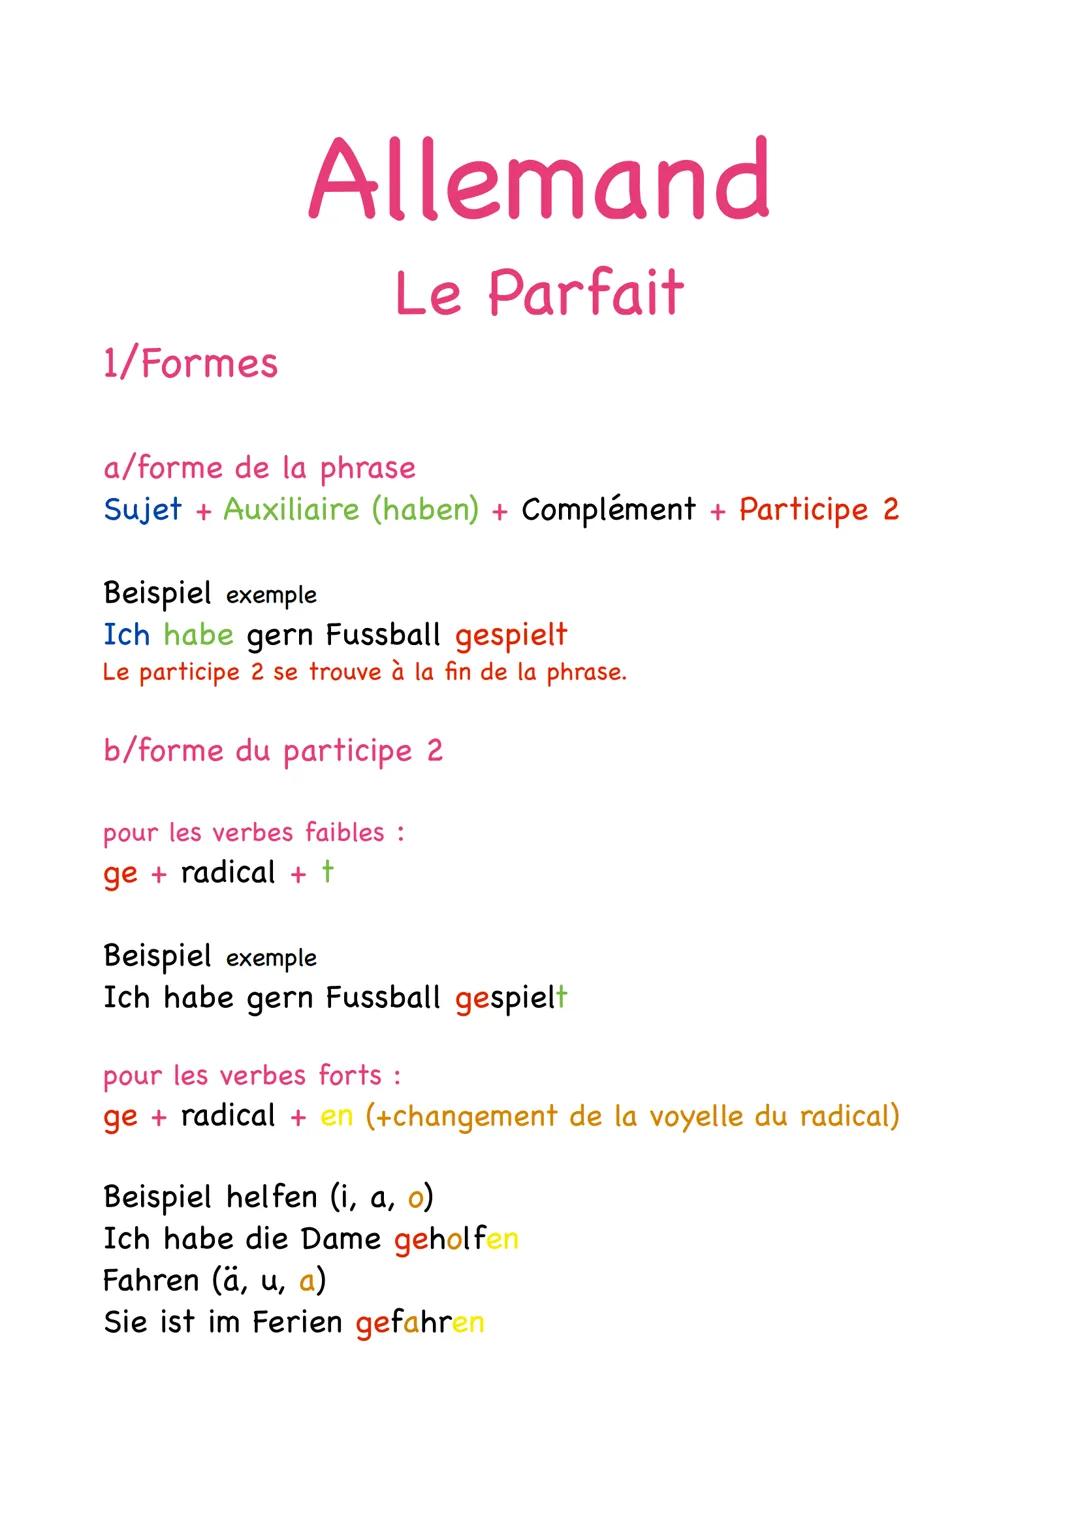 1/Formes
Allemand
Le Parfait
a/forme de la phrase
Sujet + Auxiliaire (haben) + Complément + Participe 2
Beispiel exemple
Ich habe gern Fussb